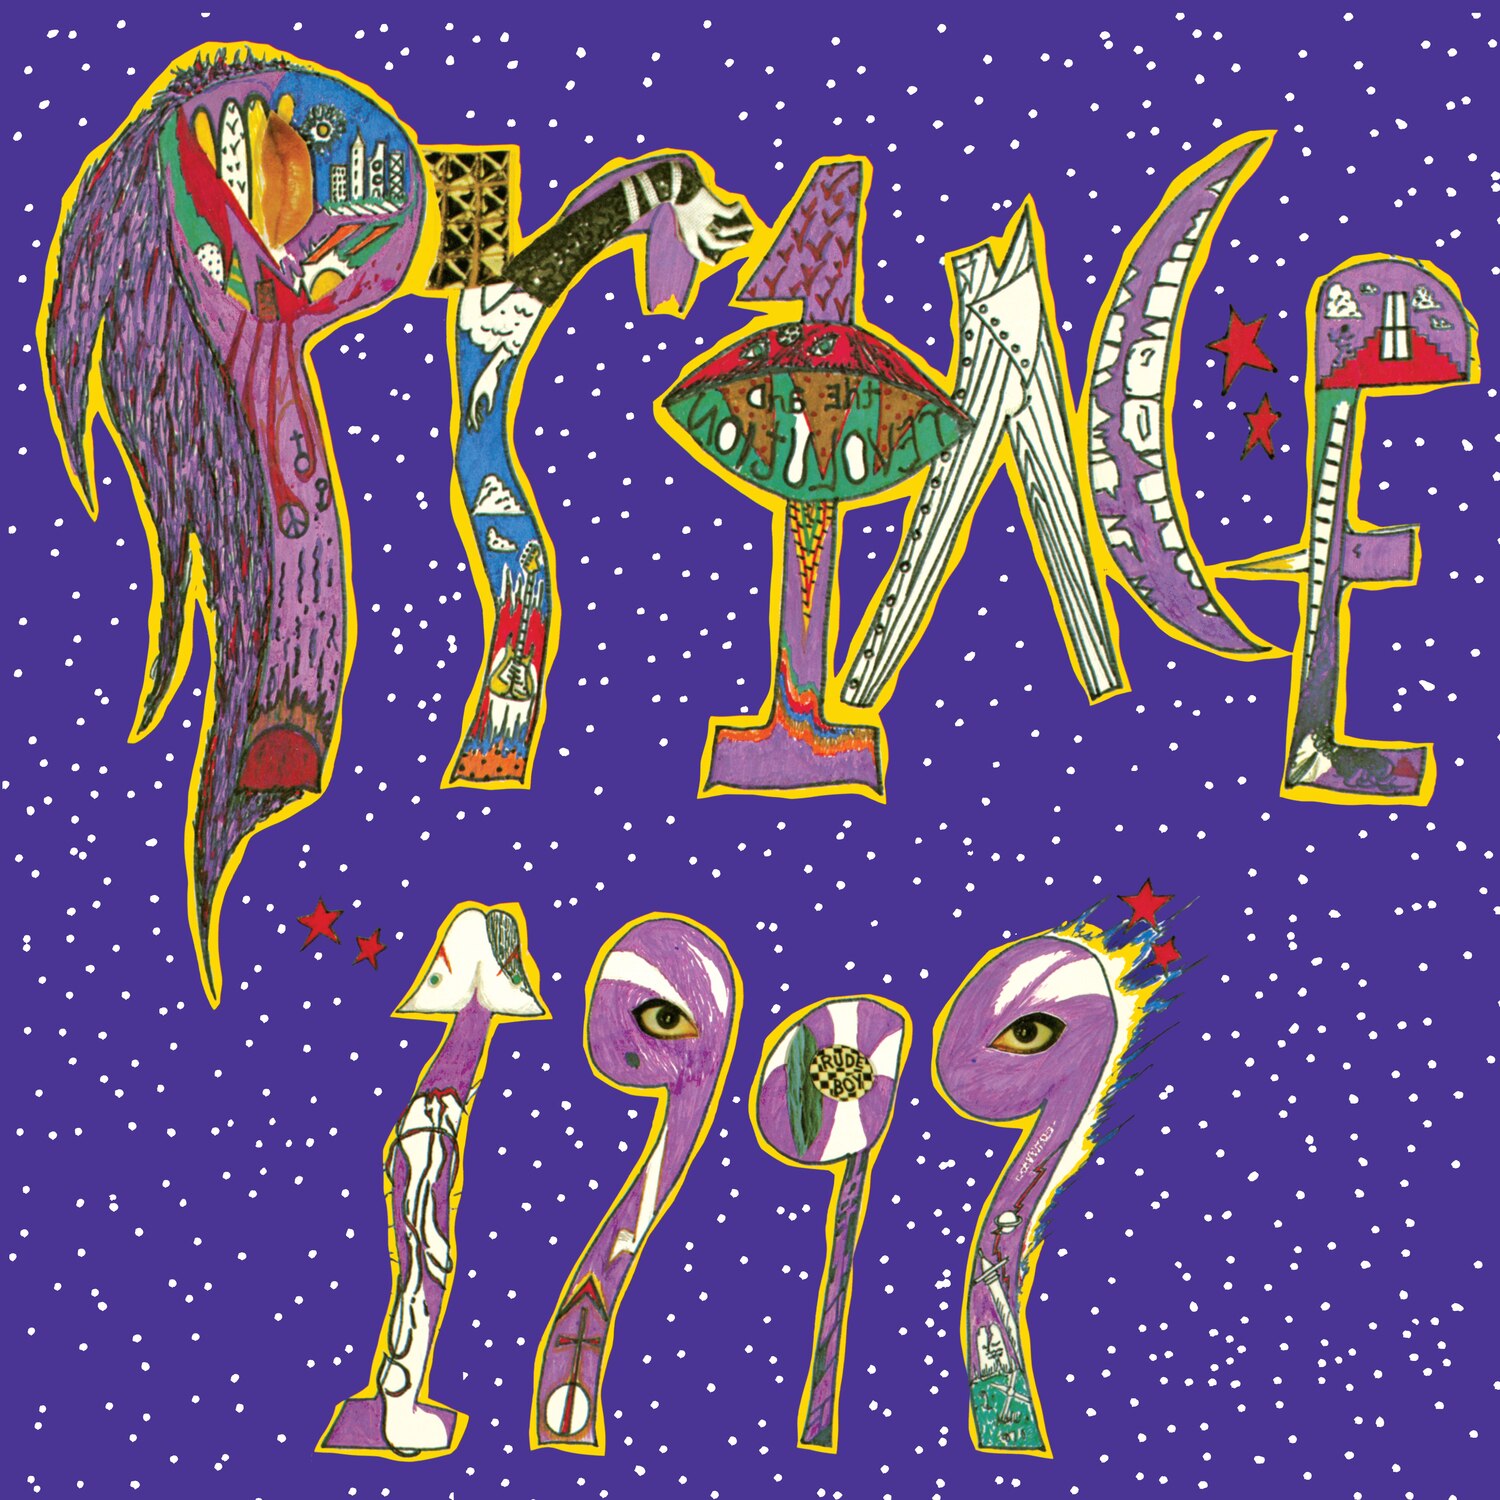 1999 -- PRINCE